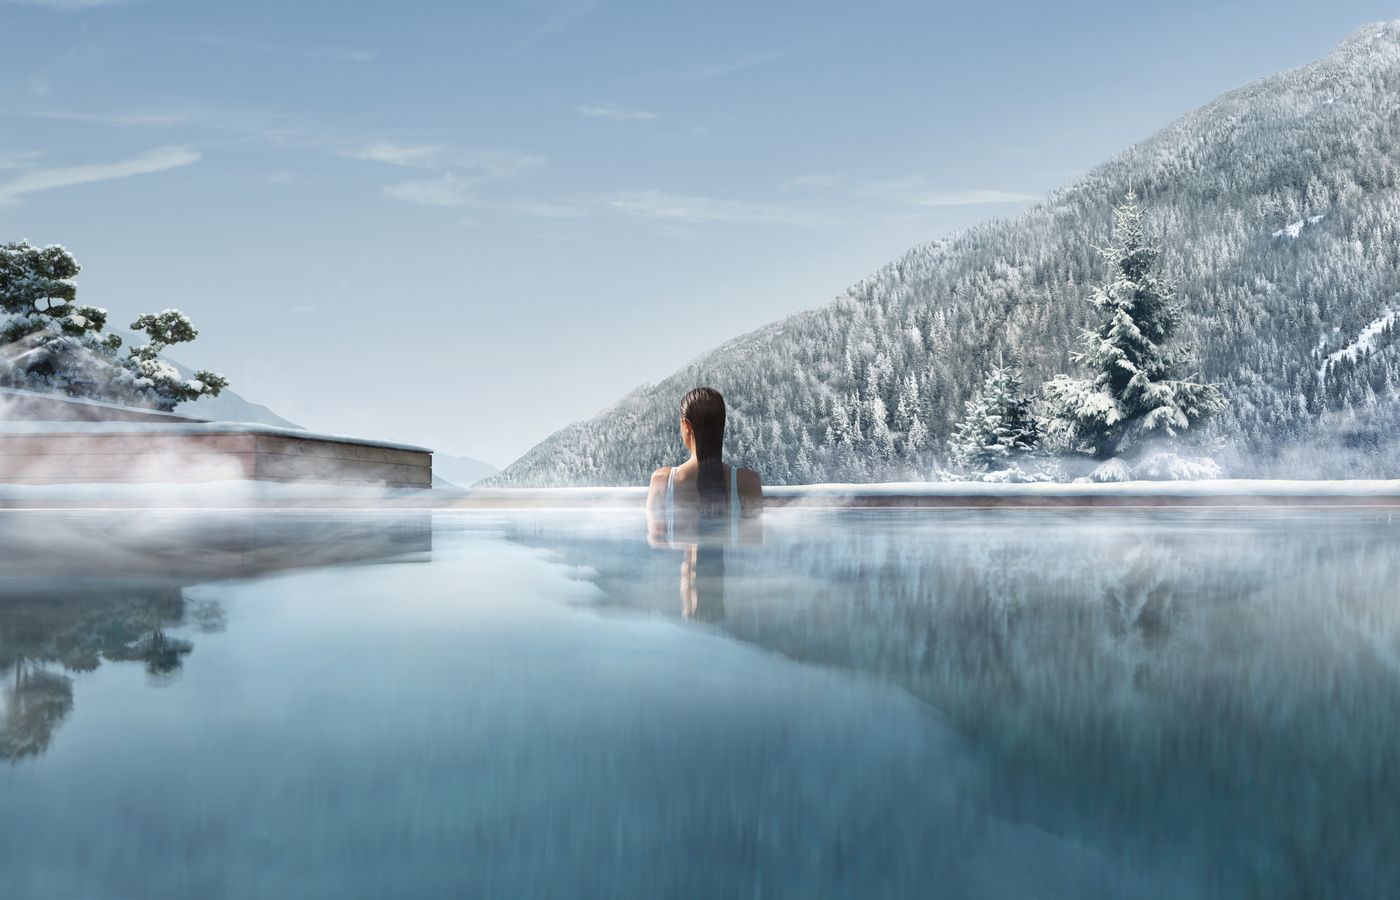 Trip Ayurveda - FitReisen - Lefay Resort & Spa Dolomiti in Pinzolo buche jetzt Deinen Wellness & Beauty Urlaub im Lefay Resort & Spa Dolomiti in der Region Südtirol, in Italien günstig bei uns!